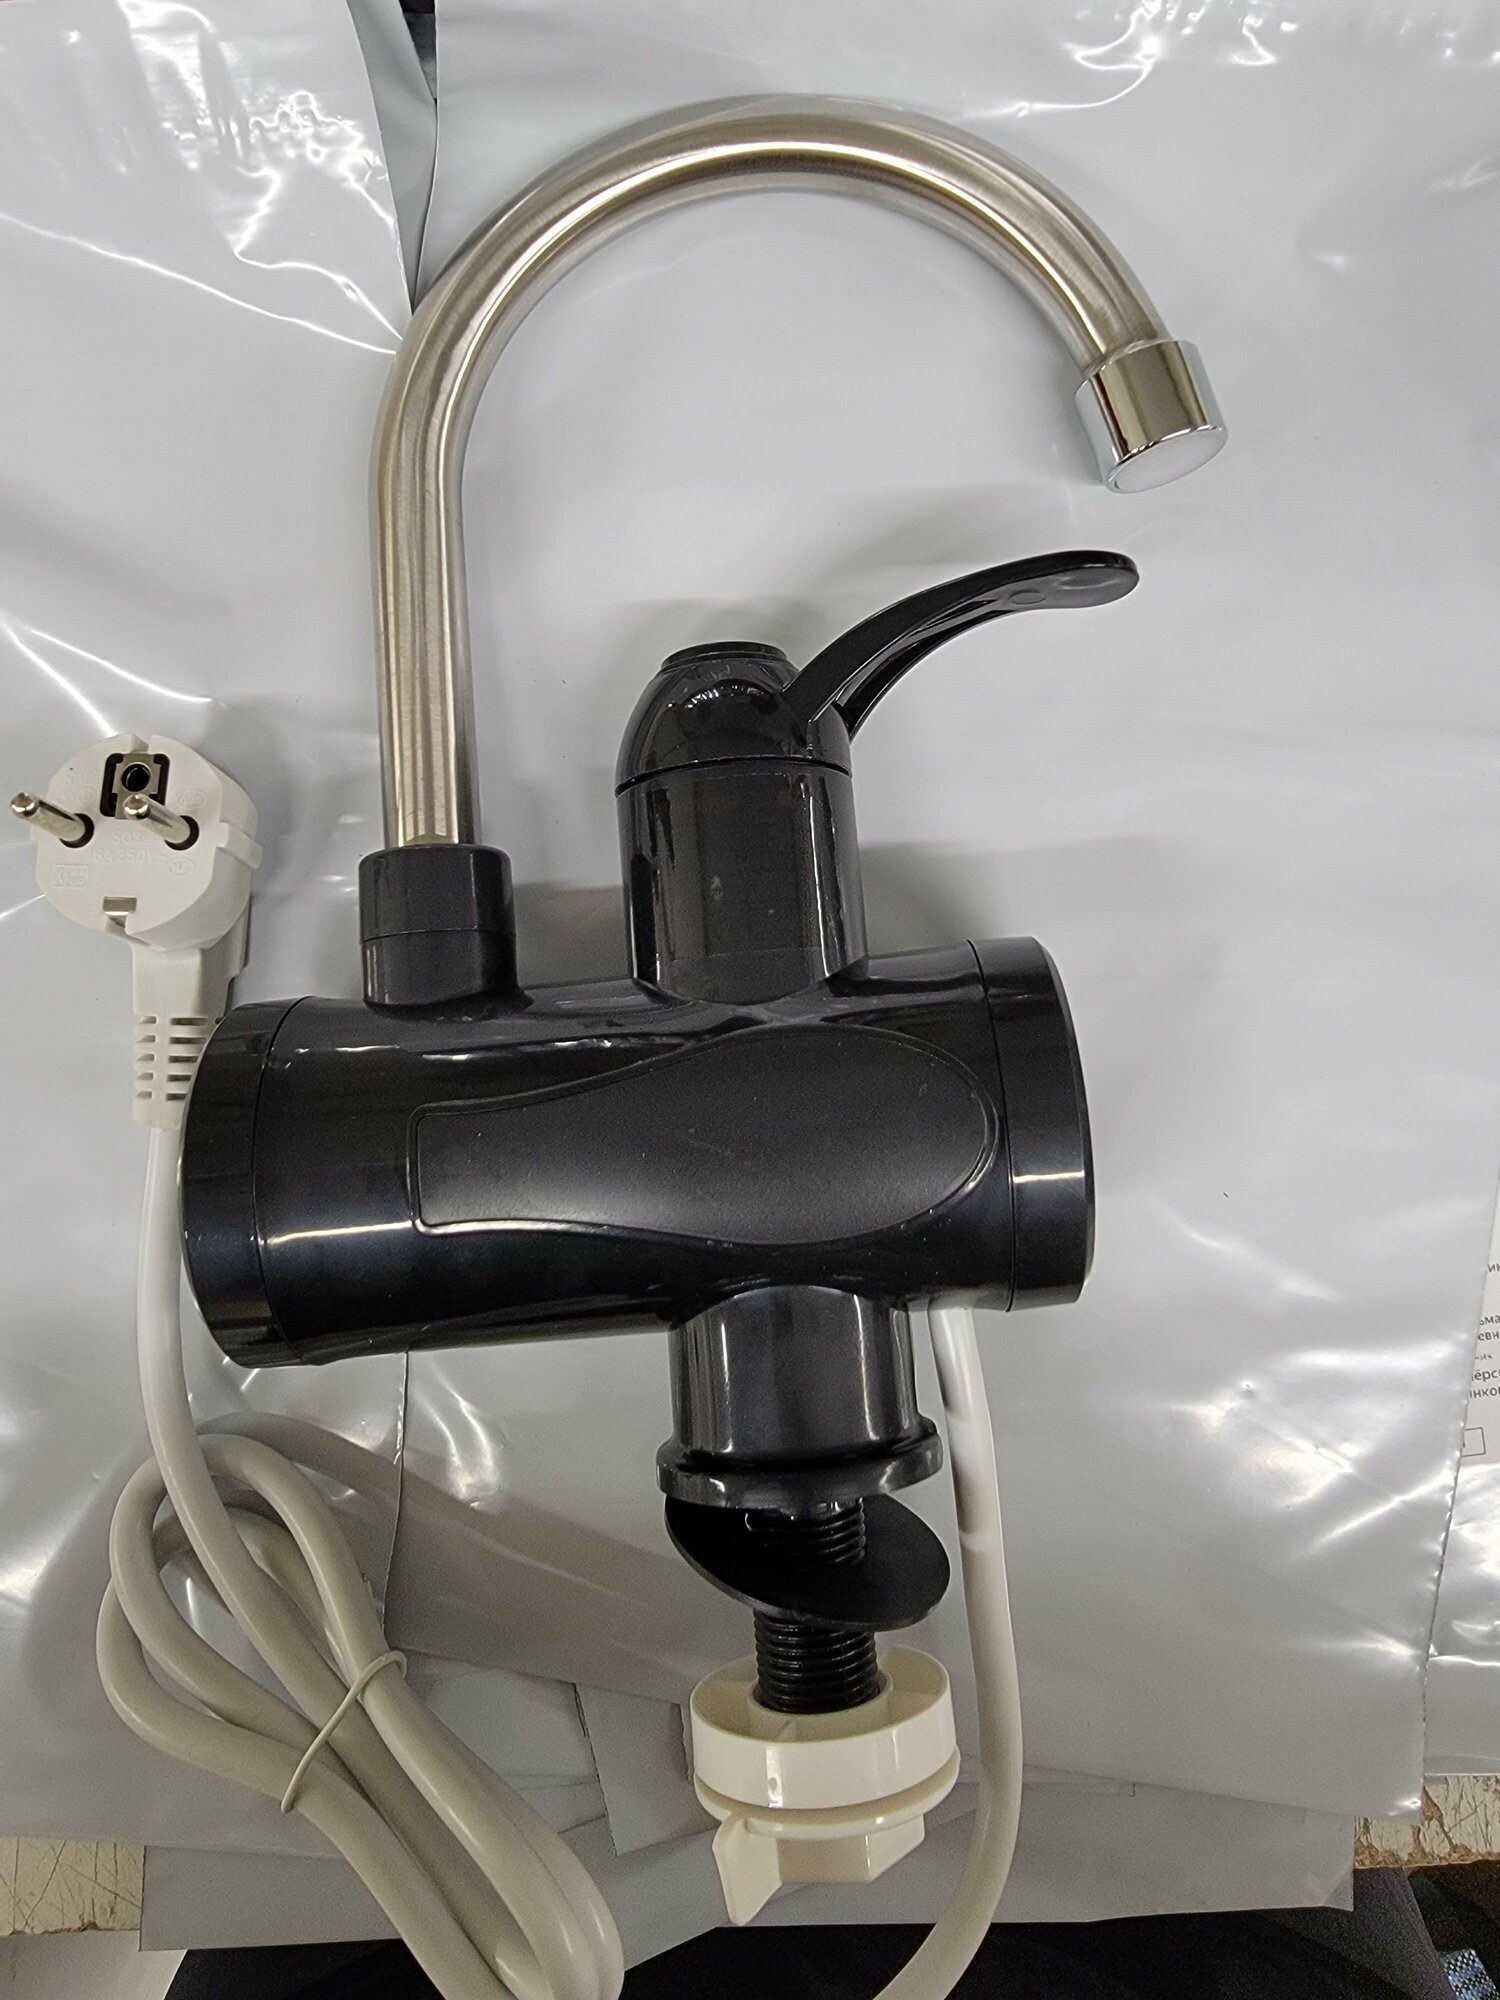 Кран нагрева электрический Instant electric heating water faucet водонагреватель черный - фотография № 8